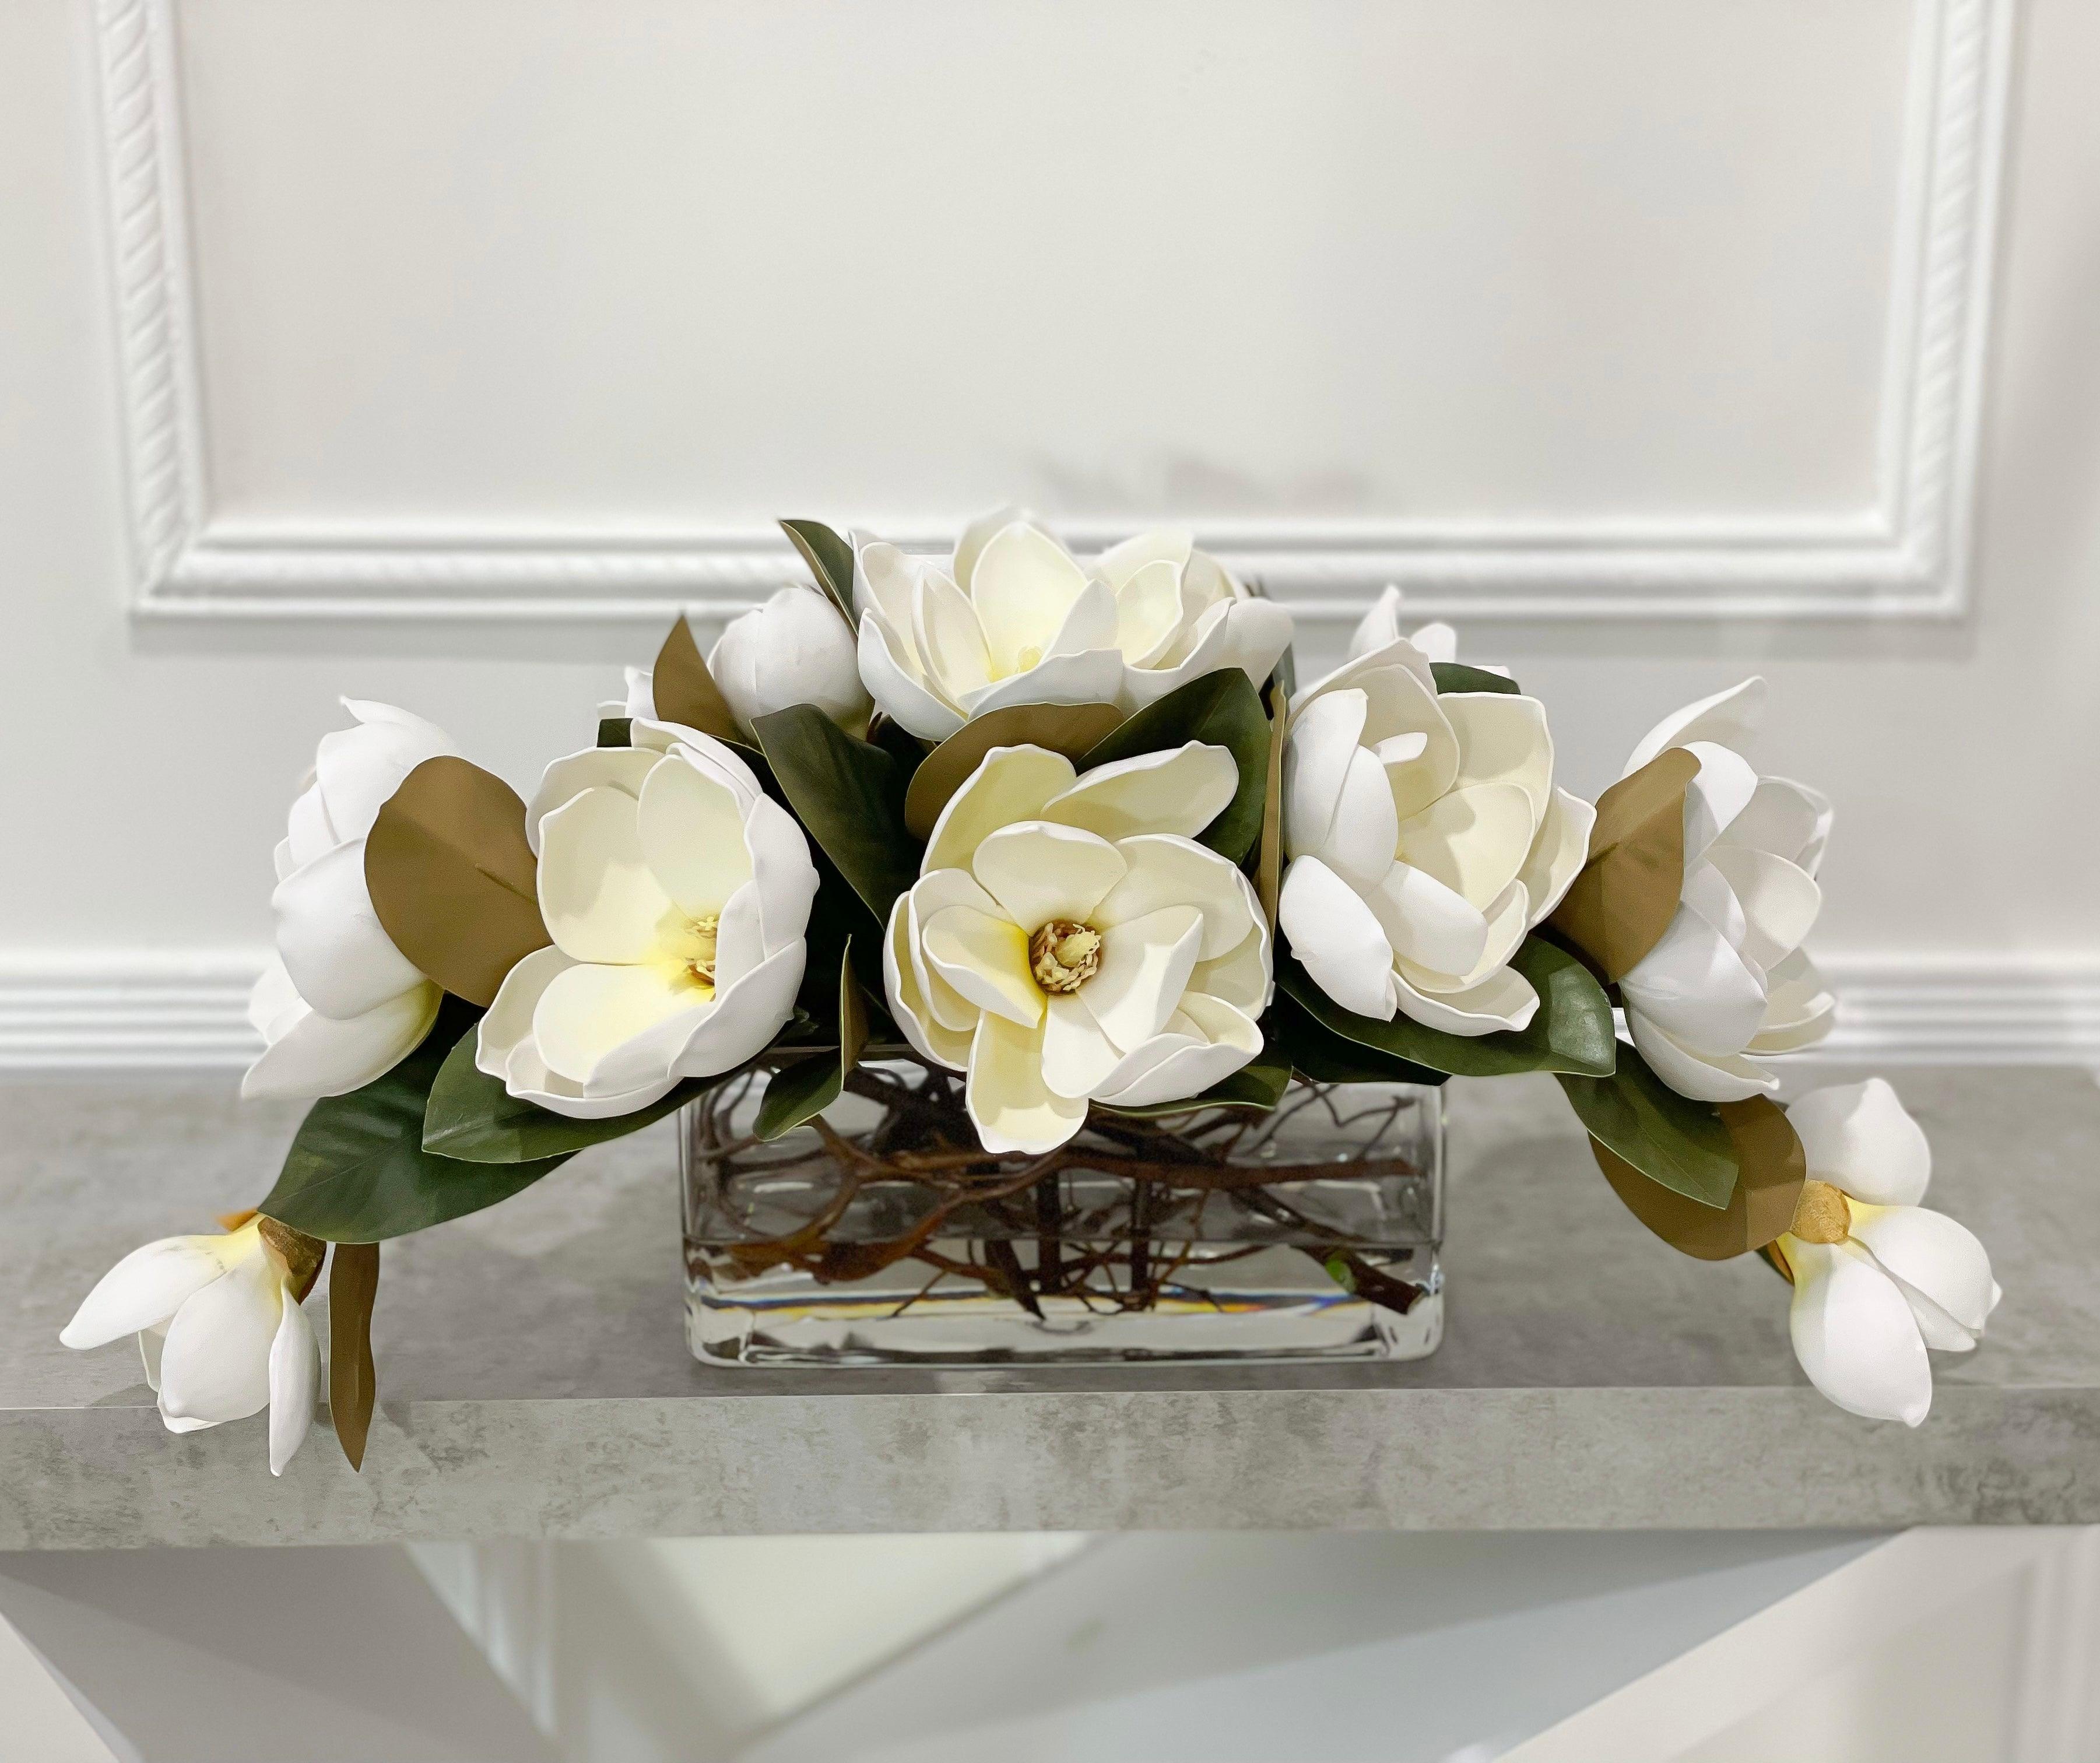 Magnolia Floral Arrangement - Flovery